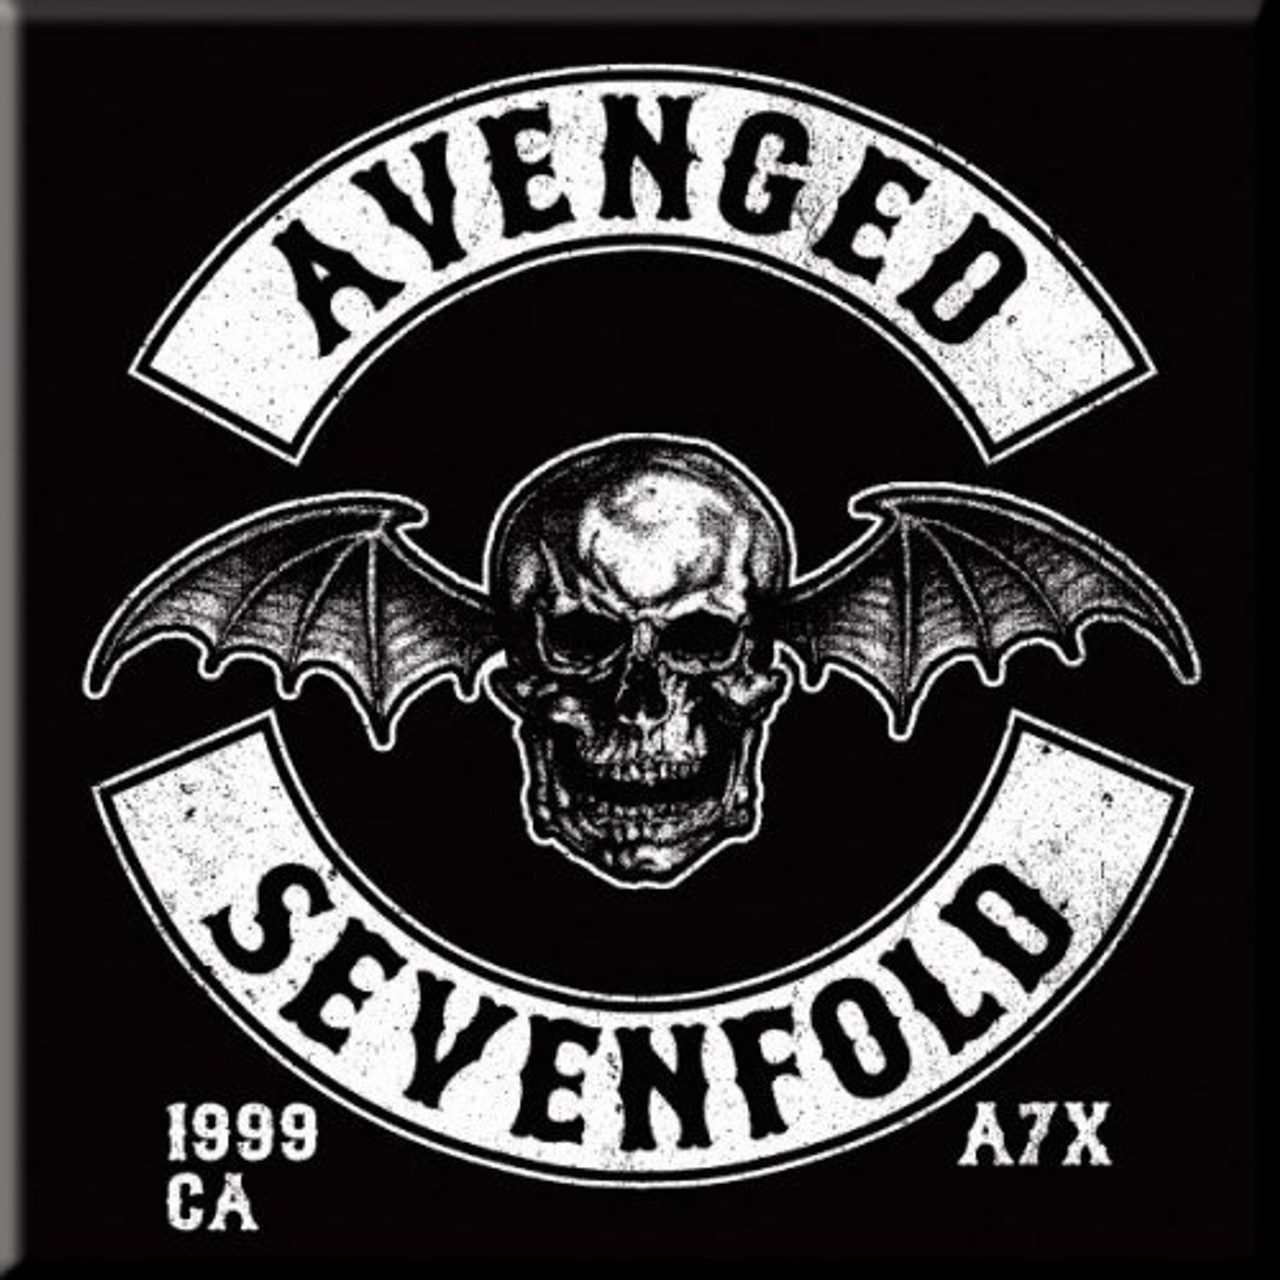 Avenged Sevenfold Pack 01